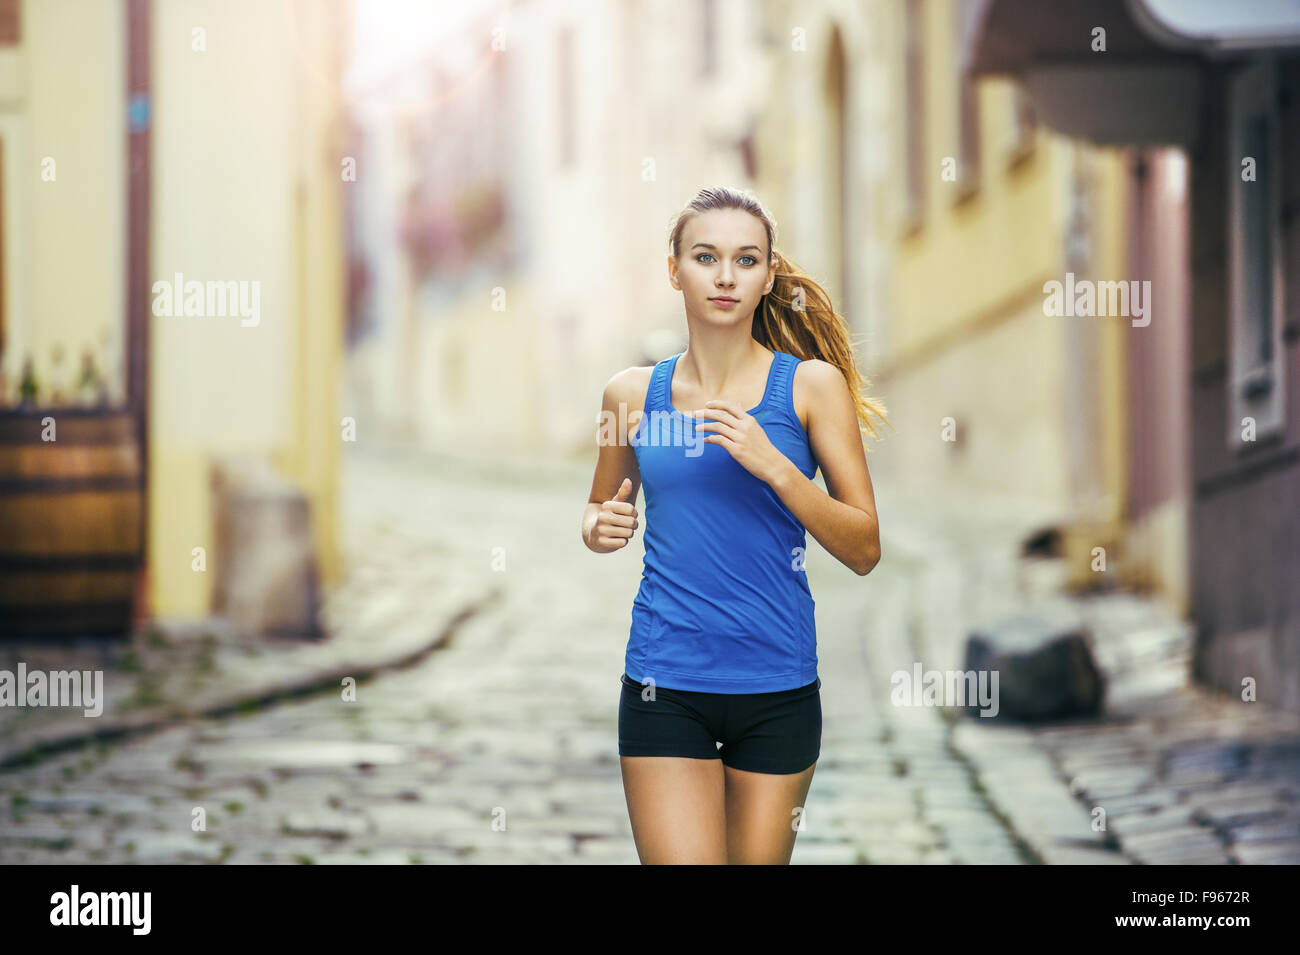 Junge weibliche Läufer ist auf gefliesten Pflaster Altstadt auf Center Joggen. Gesunde Lebensweise. Stockfoto